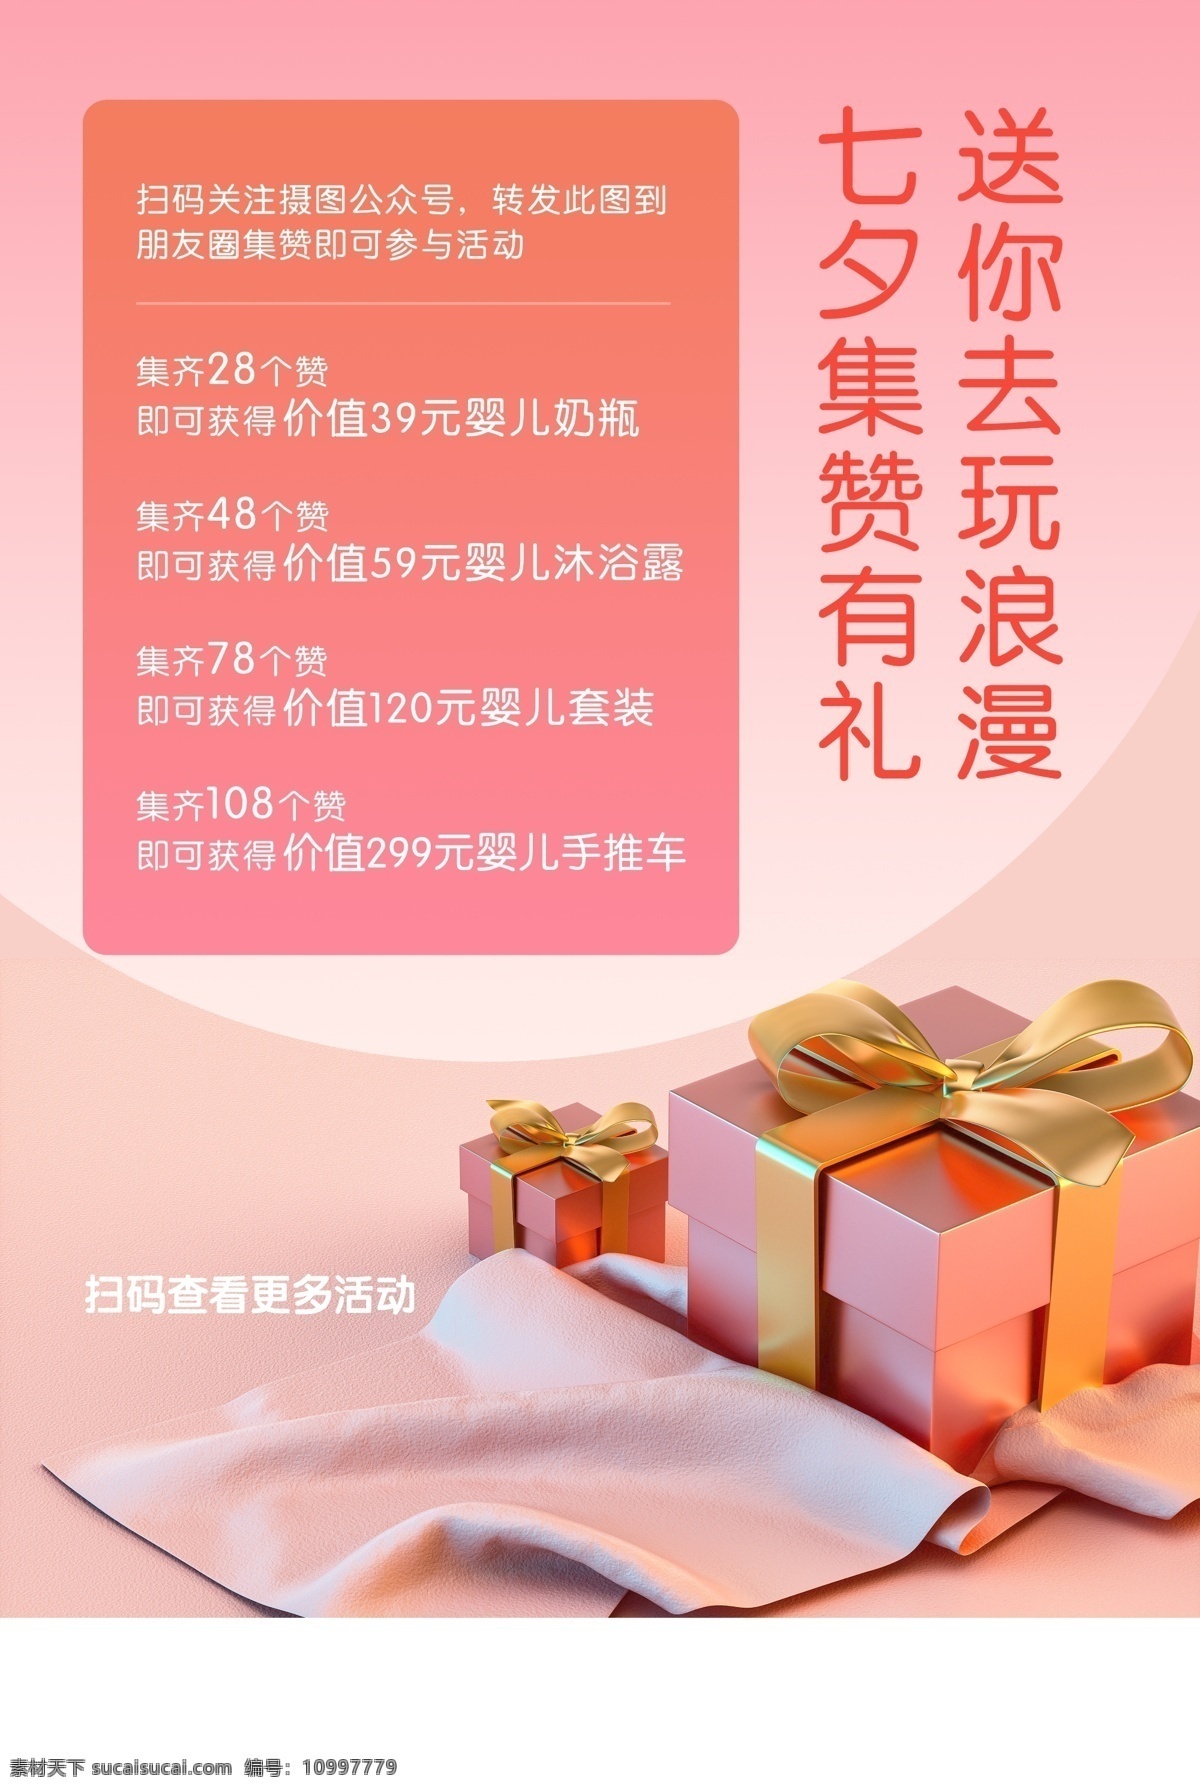 七夕 节日 促销活动 宣传海报 促销 活动 宣传 海报 传统节日海报